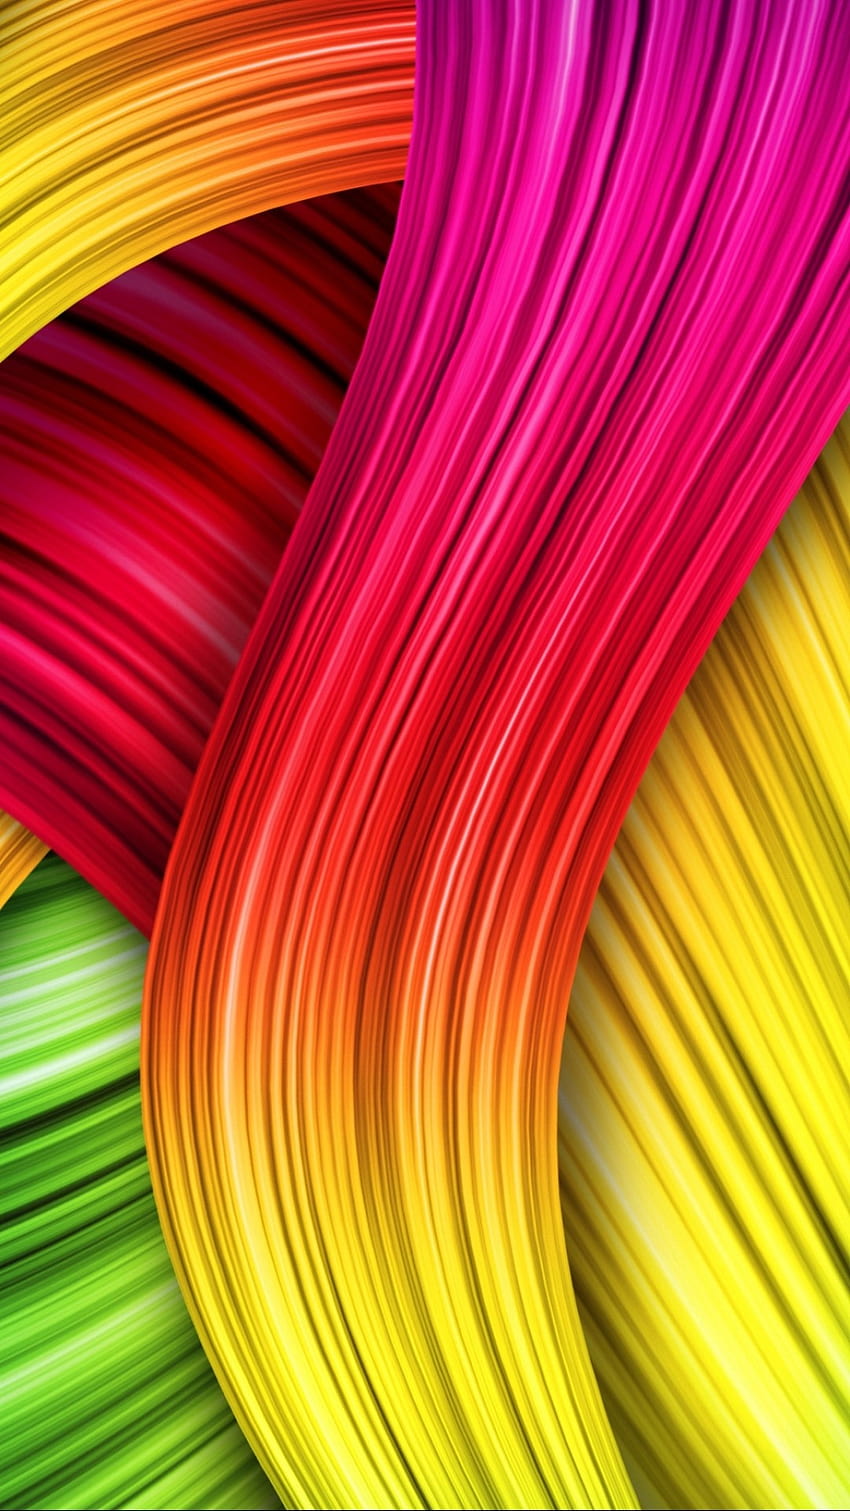 Resumen colorido para Iphone New Mobile, colores mezclados fondo de pantalla del teléfono